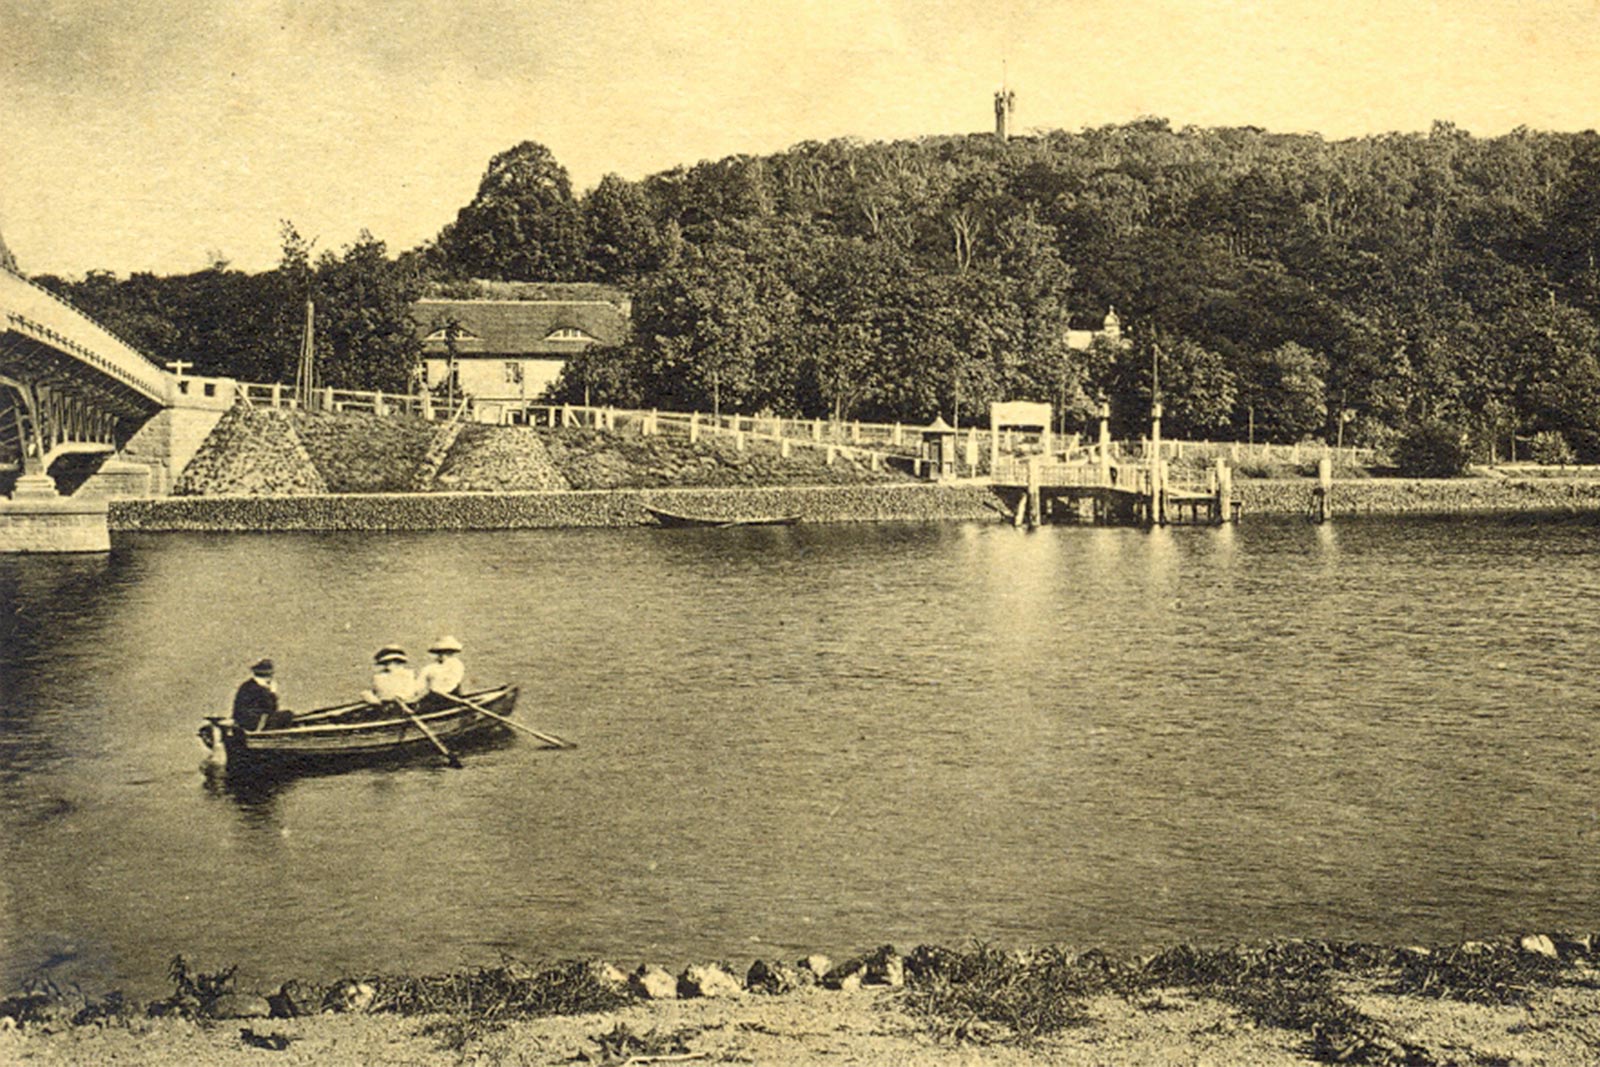  Historische Aufnahme von Baumgartenbrück mit einem Ruderboot auf dem Wasser